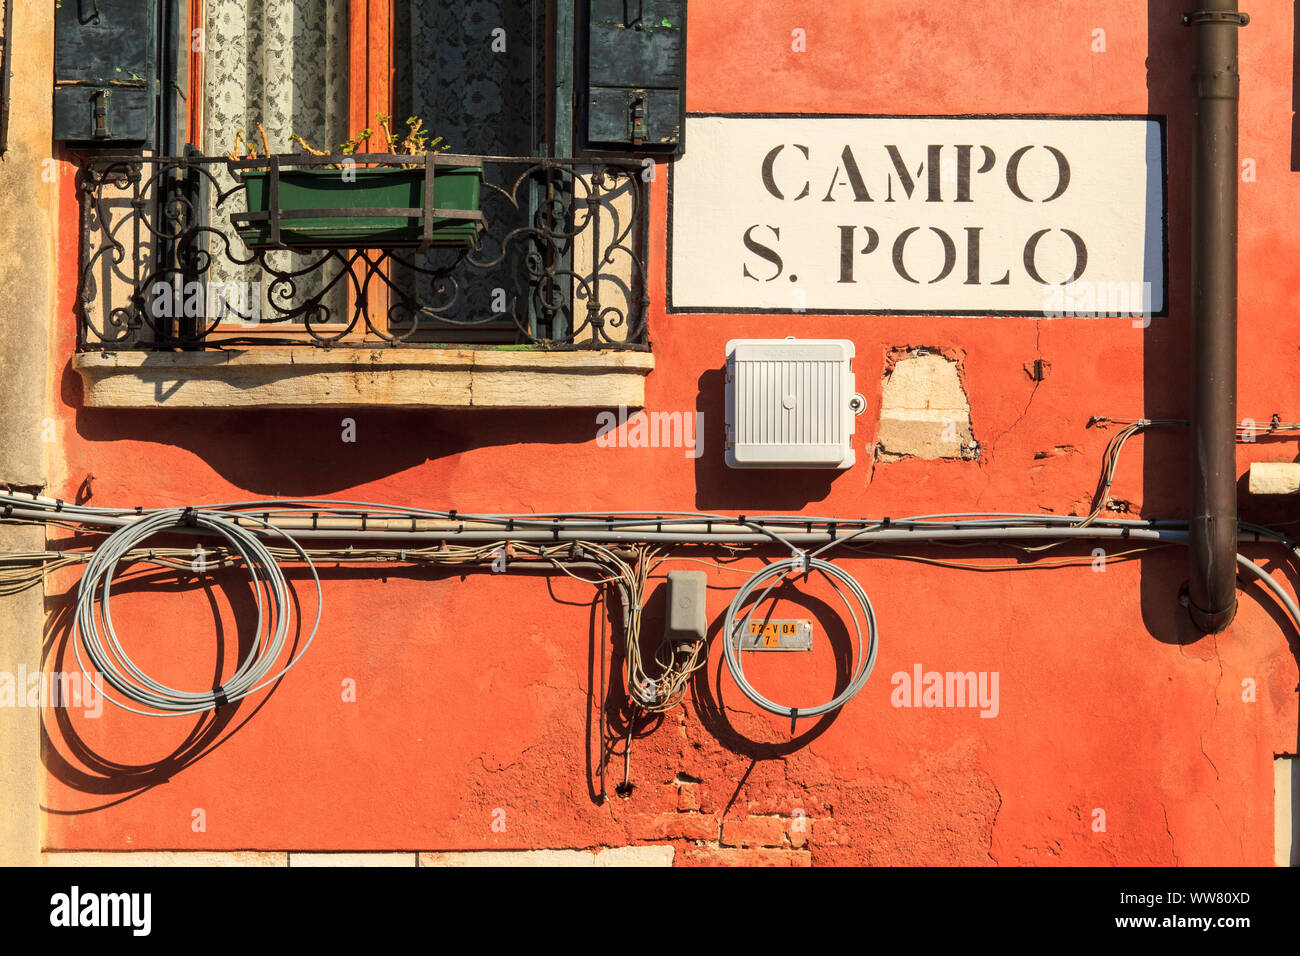 Mur d'une maison dans le Campo S. Polo, Venise, Italie Banque D'Images